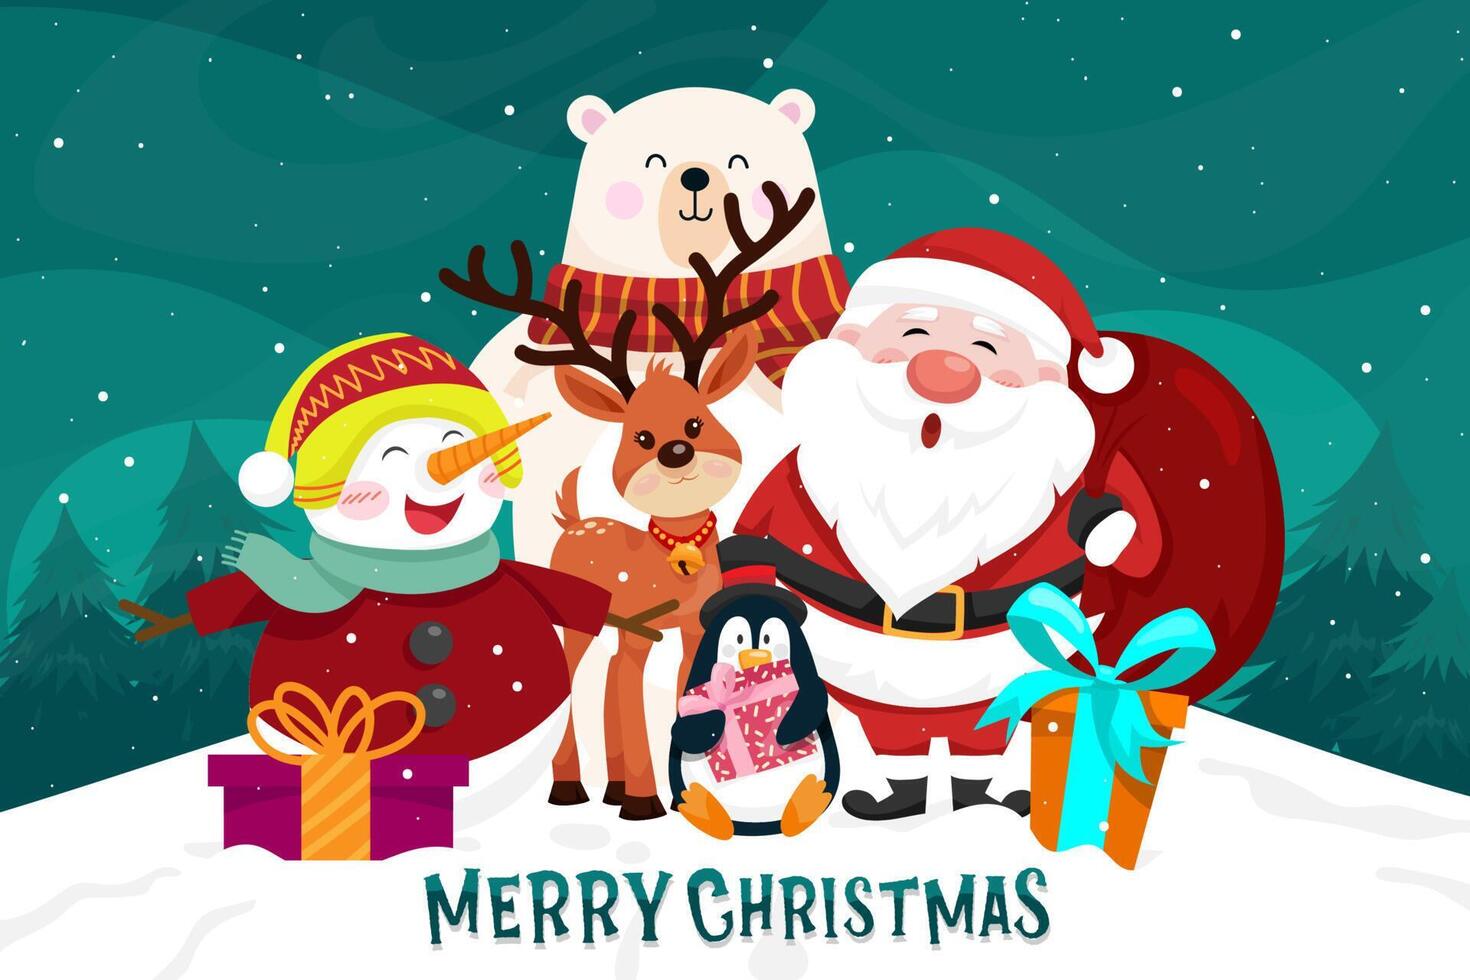 escenas navideñas santa claus, pingüino, reno, oso, muñeco de nieve, árbol de navidad. elemento recortado de feliz navidad vector